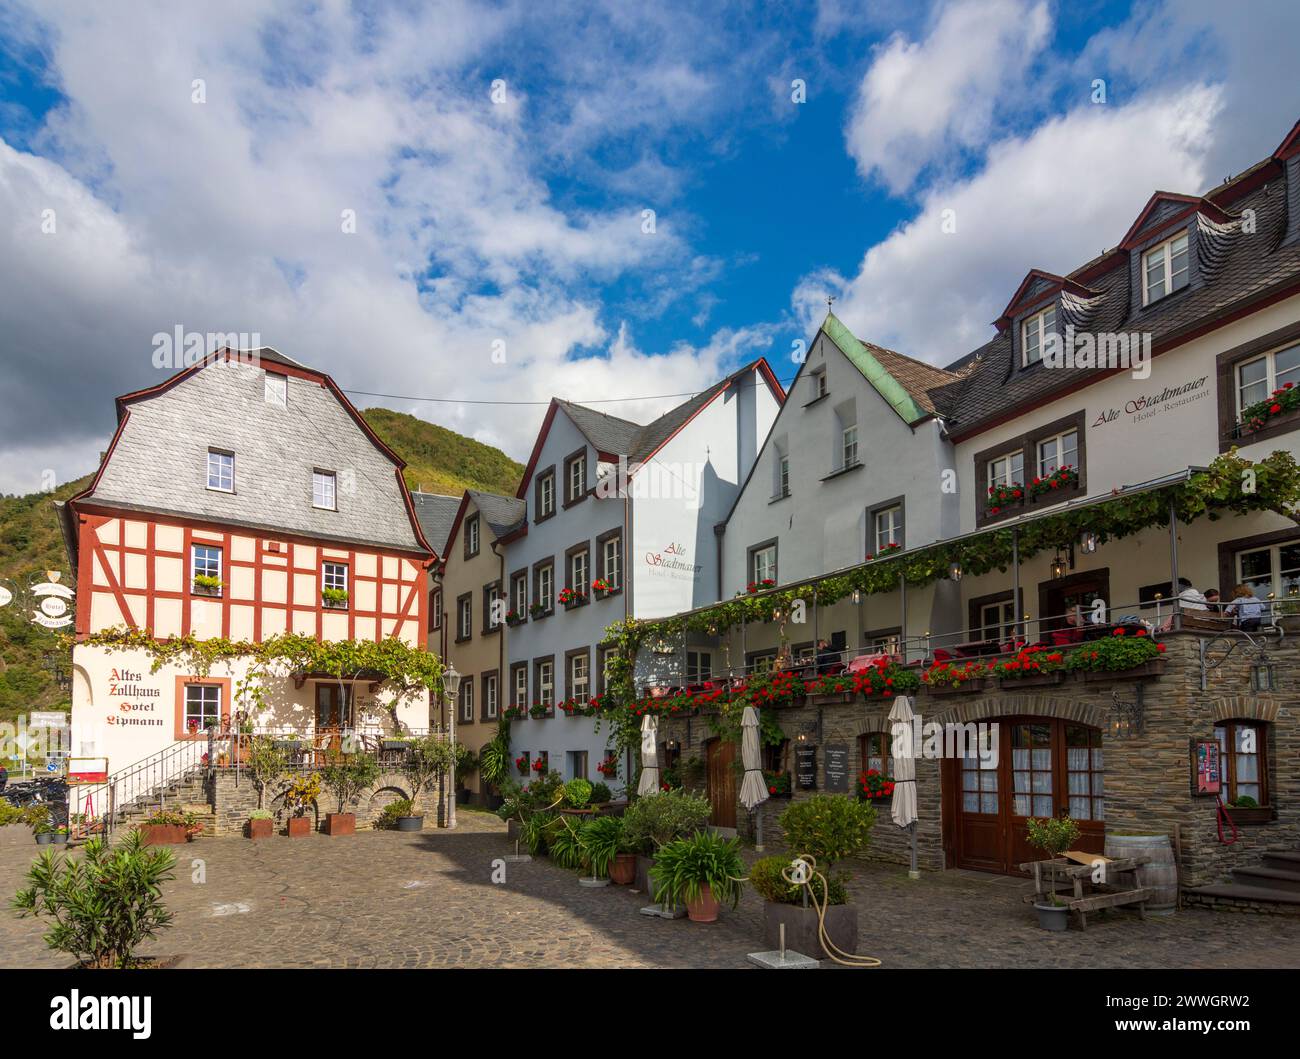 Beilstein: Beilstein Old Town, house Altes Zollhaus in Mosel, Rheinland-Pfalz, Rhineland-Palatinate, Germany Stock Photo